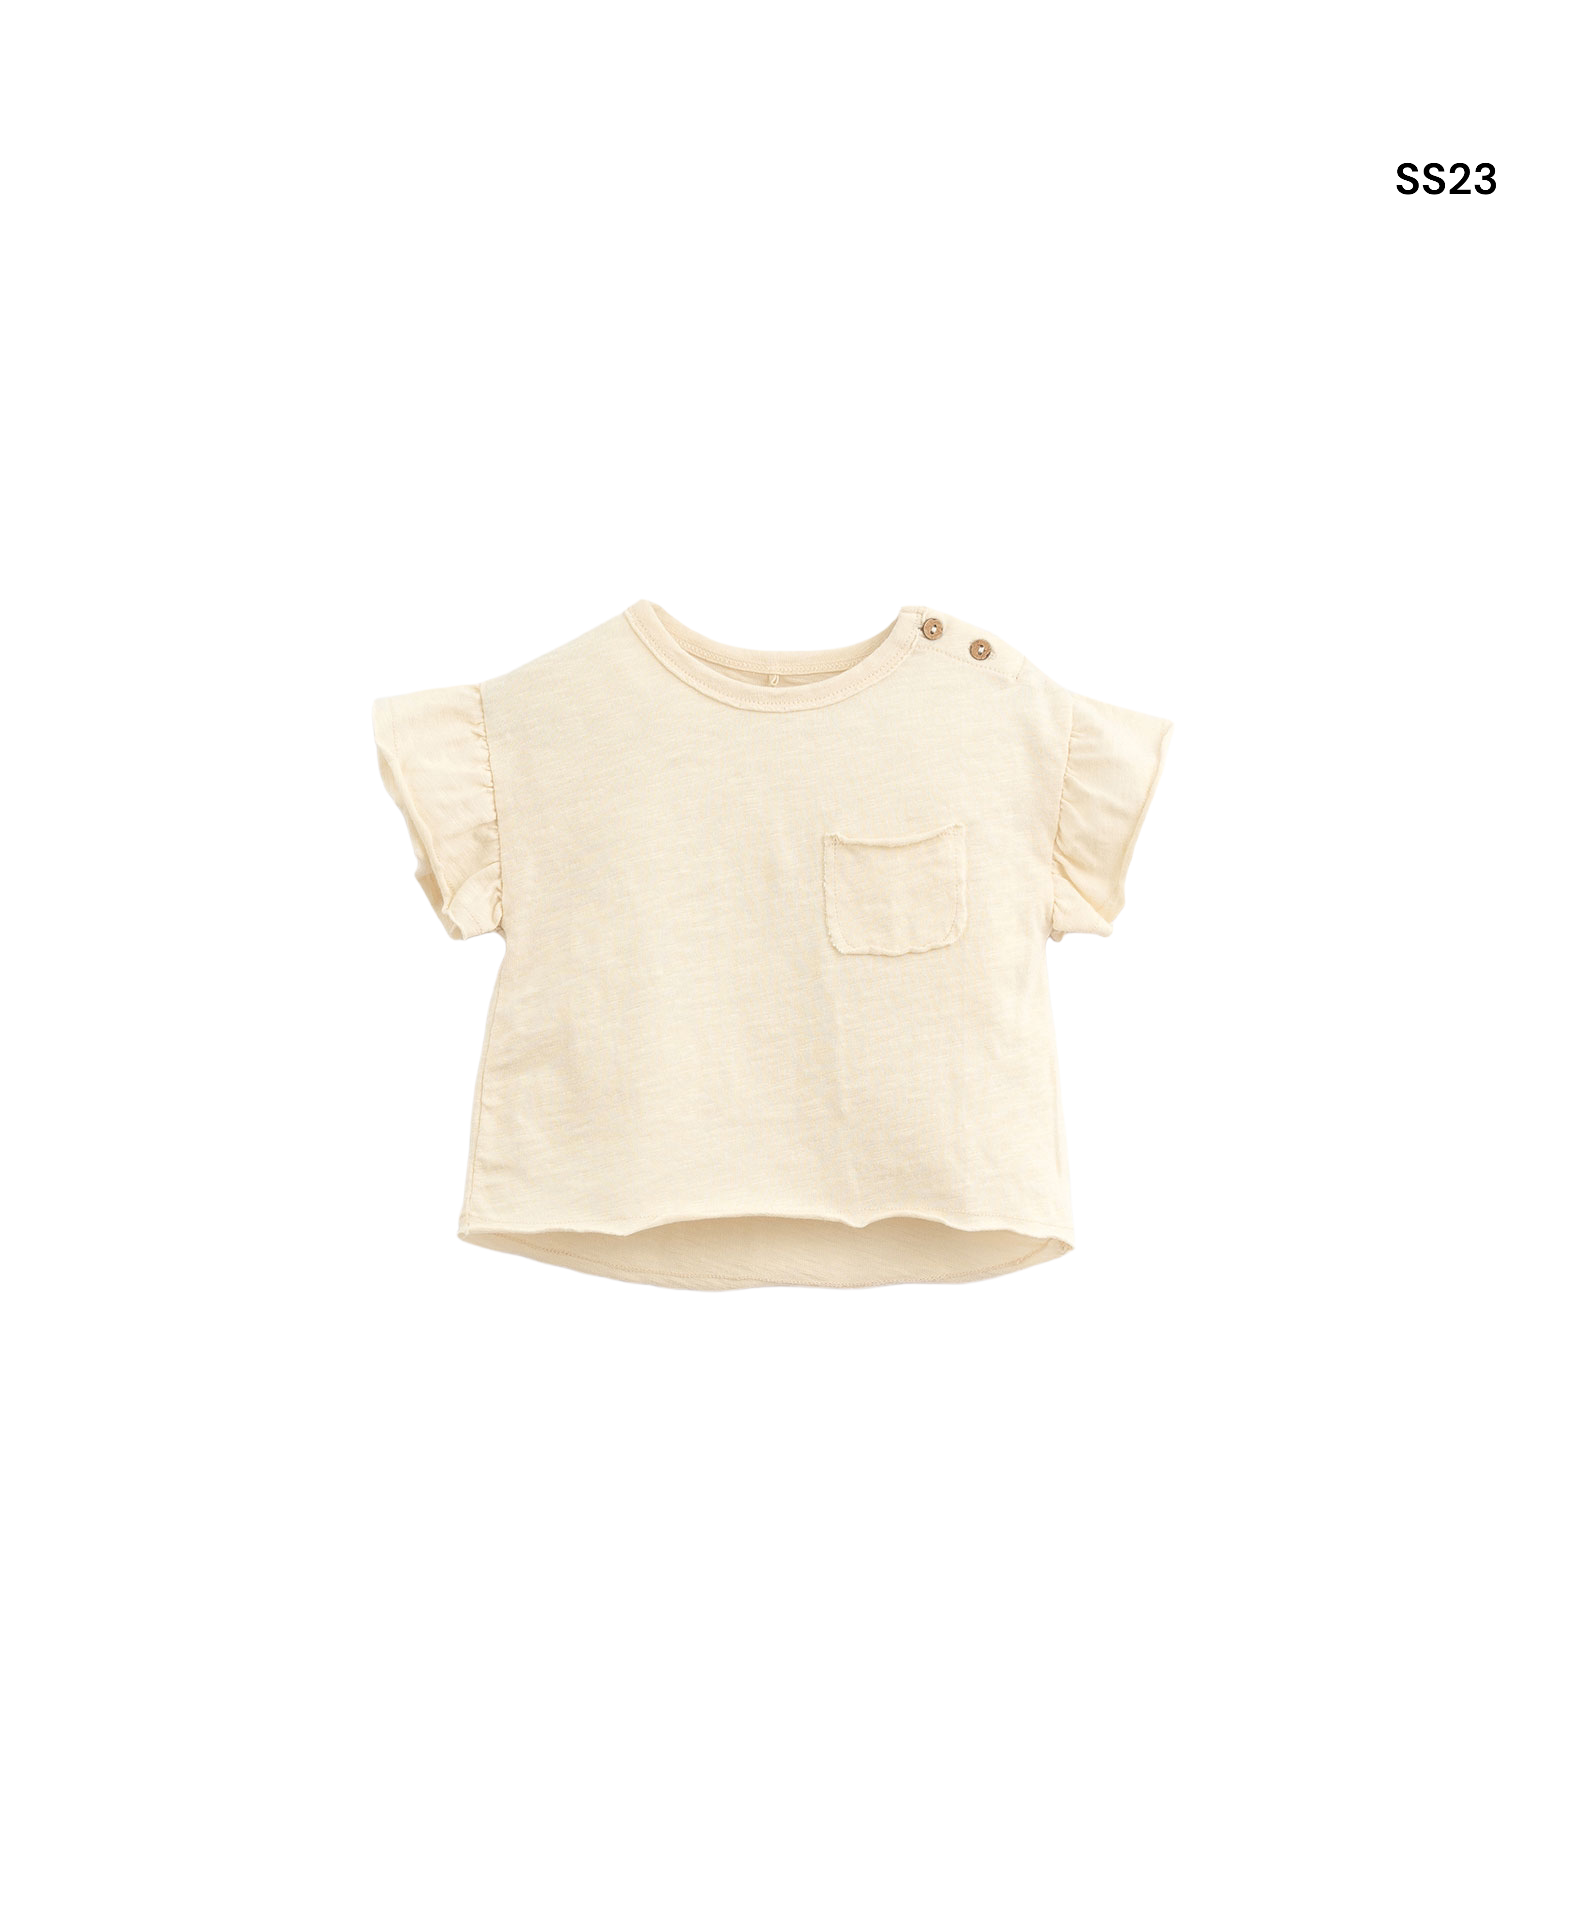 T-shirt burro con dettagli per neonata